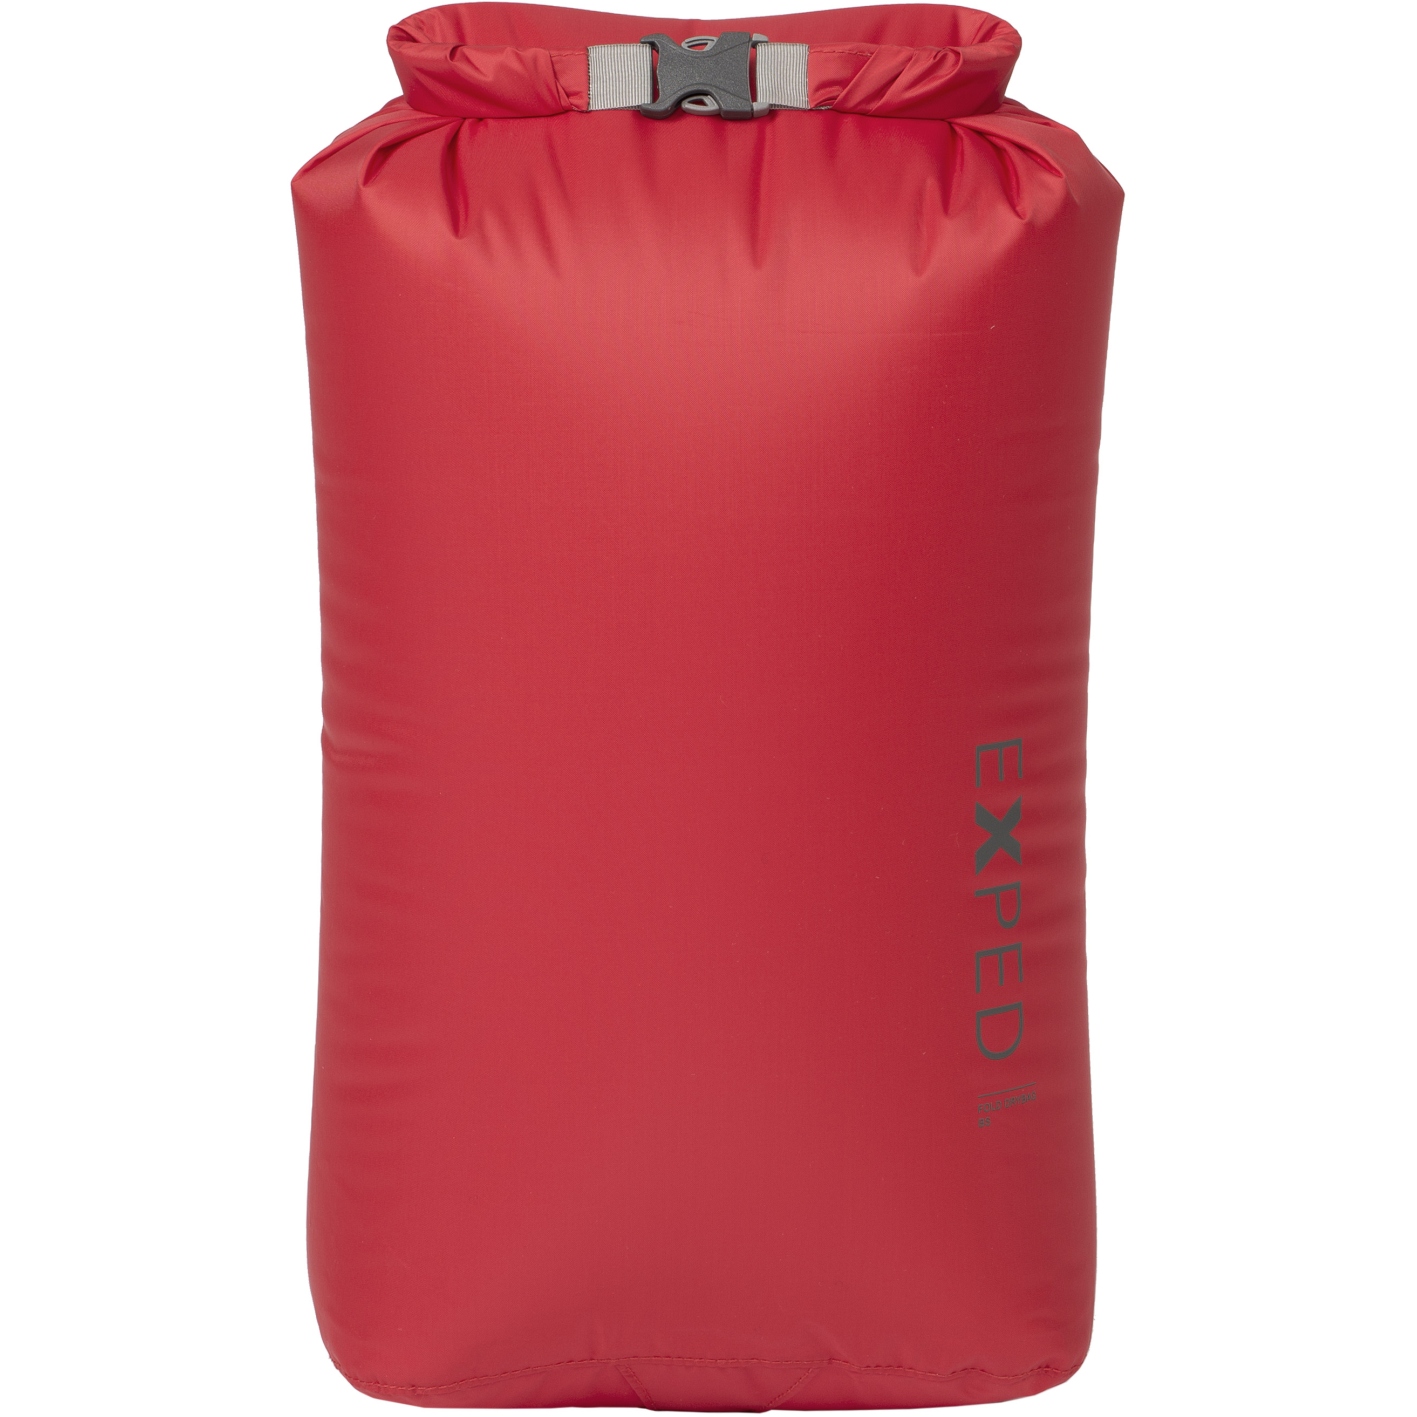 Produktbild von Exped Fold Drybag BS Packsack - M - rot